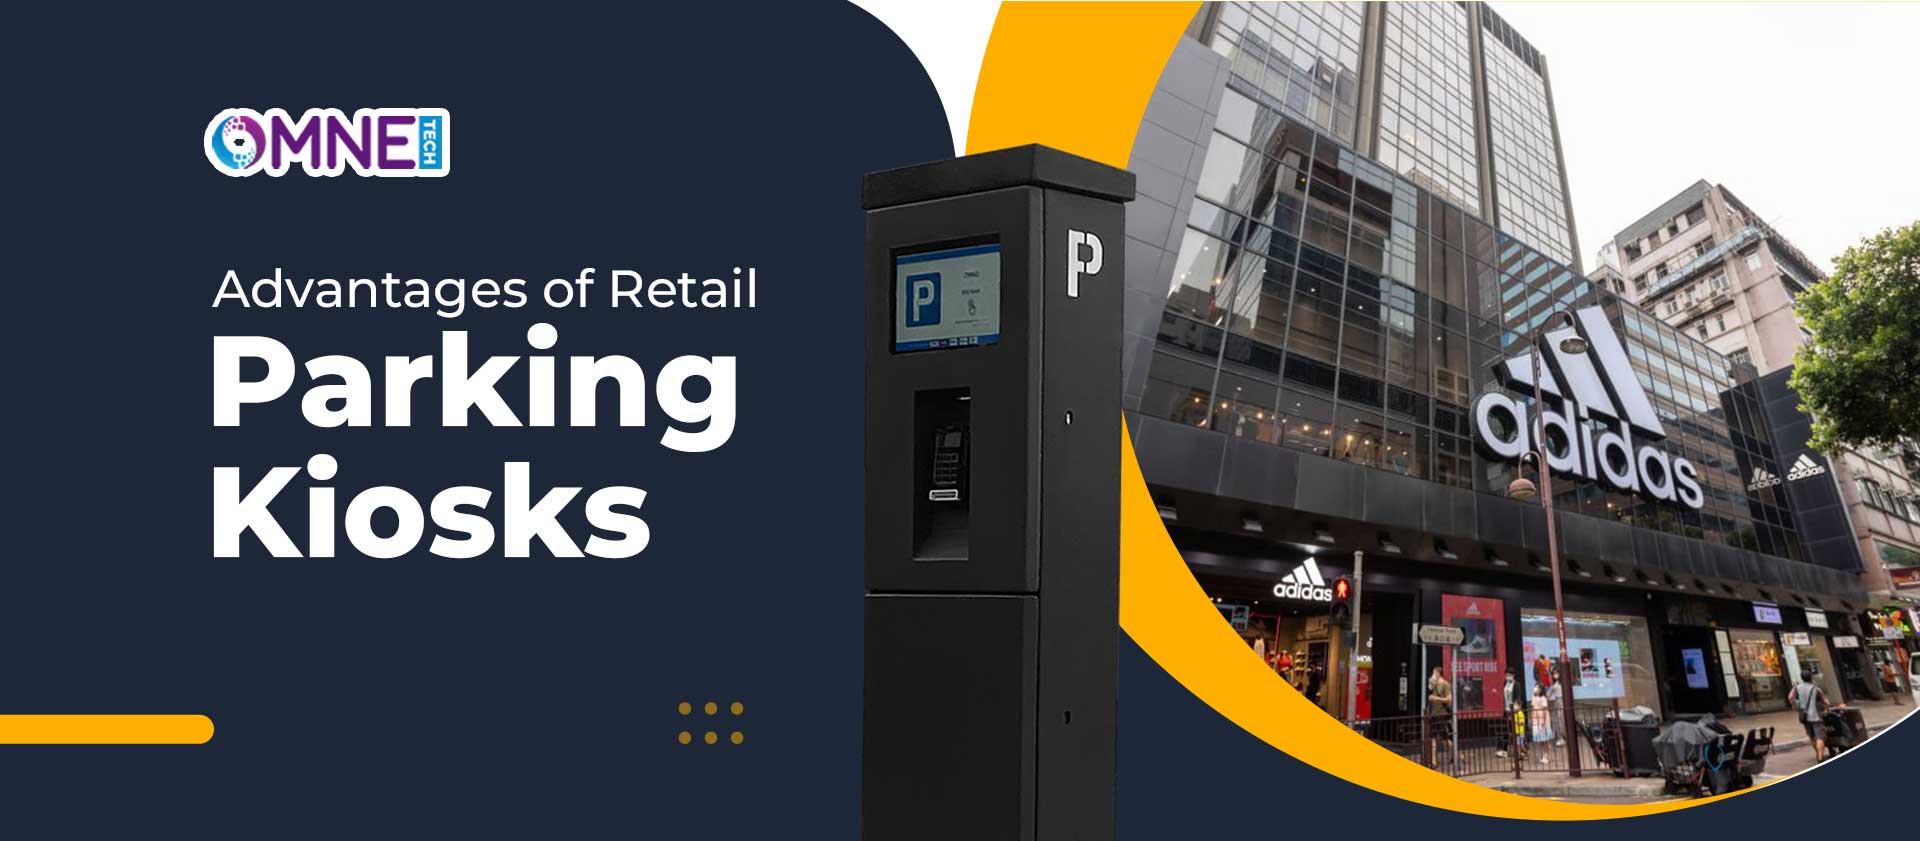 Advantages of Retail Parking Kiosks